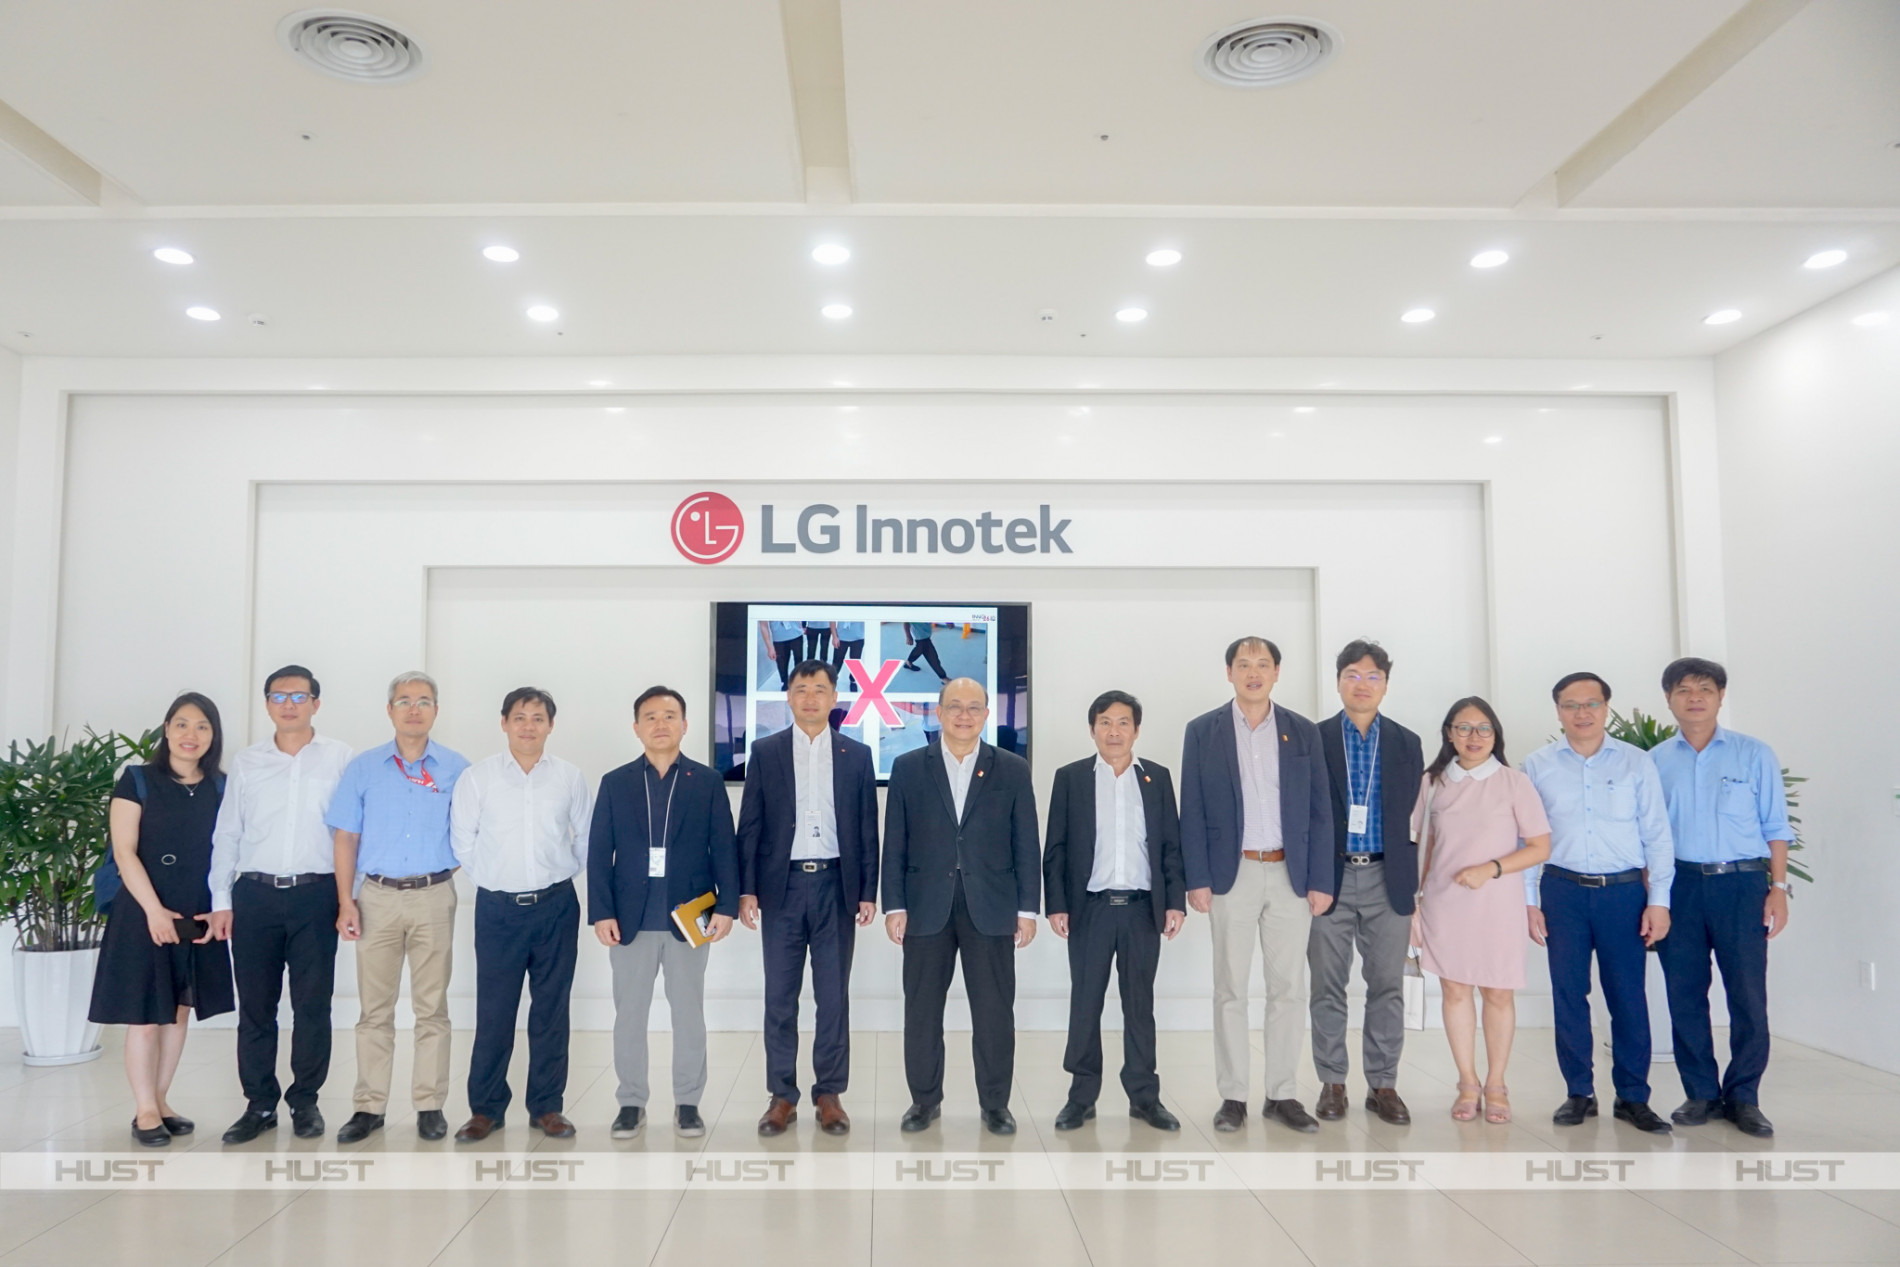 Đại học Bách khoa Hà Nội ký kết với LG Innotek gia tăng cơ hội việc làm cho sinh viên